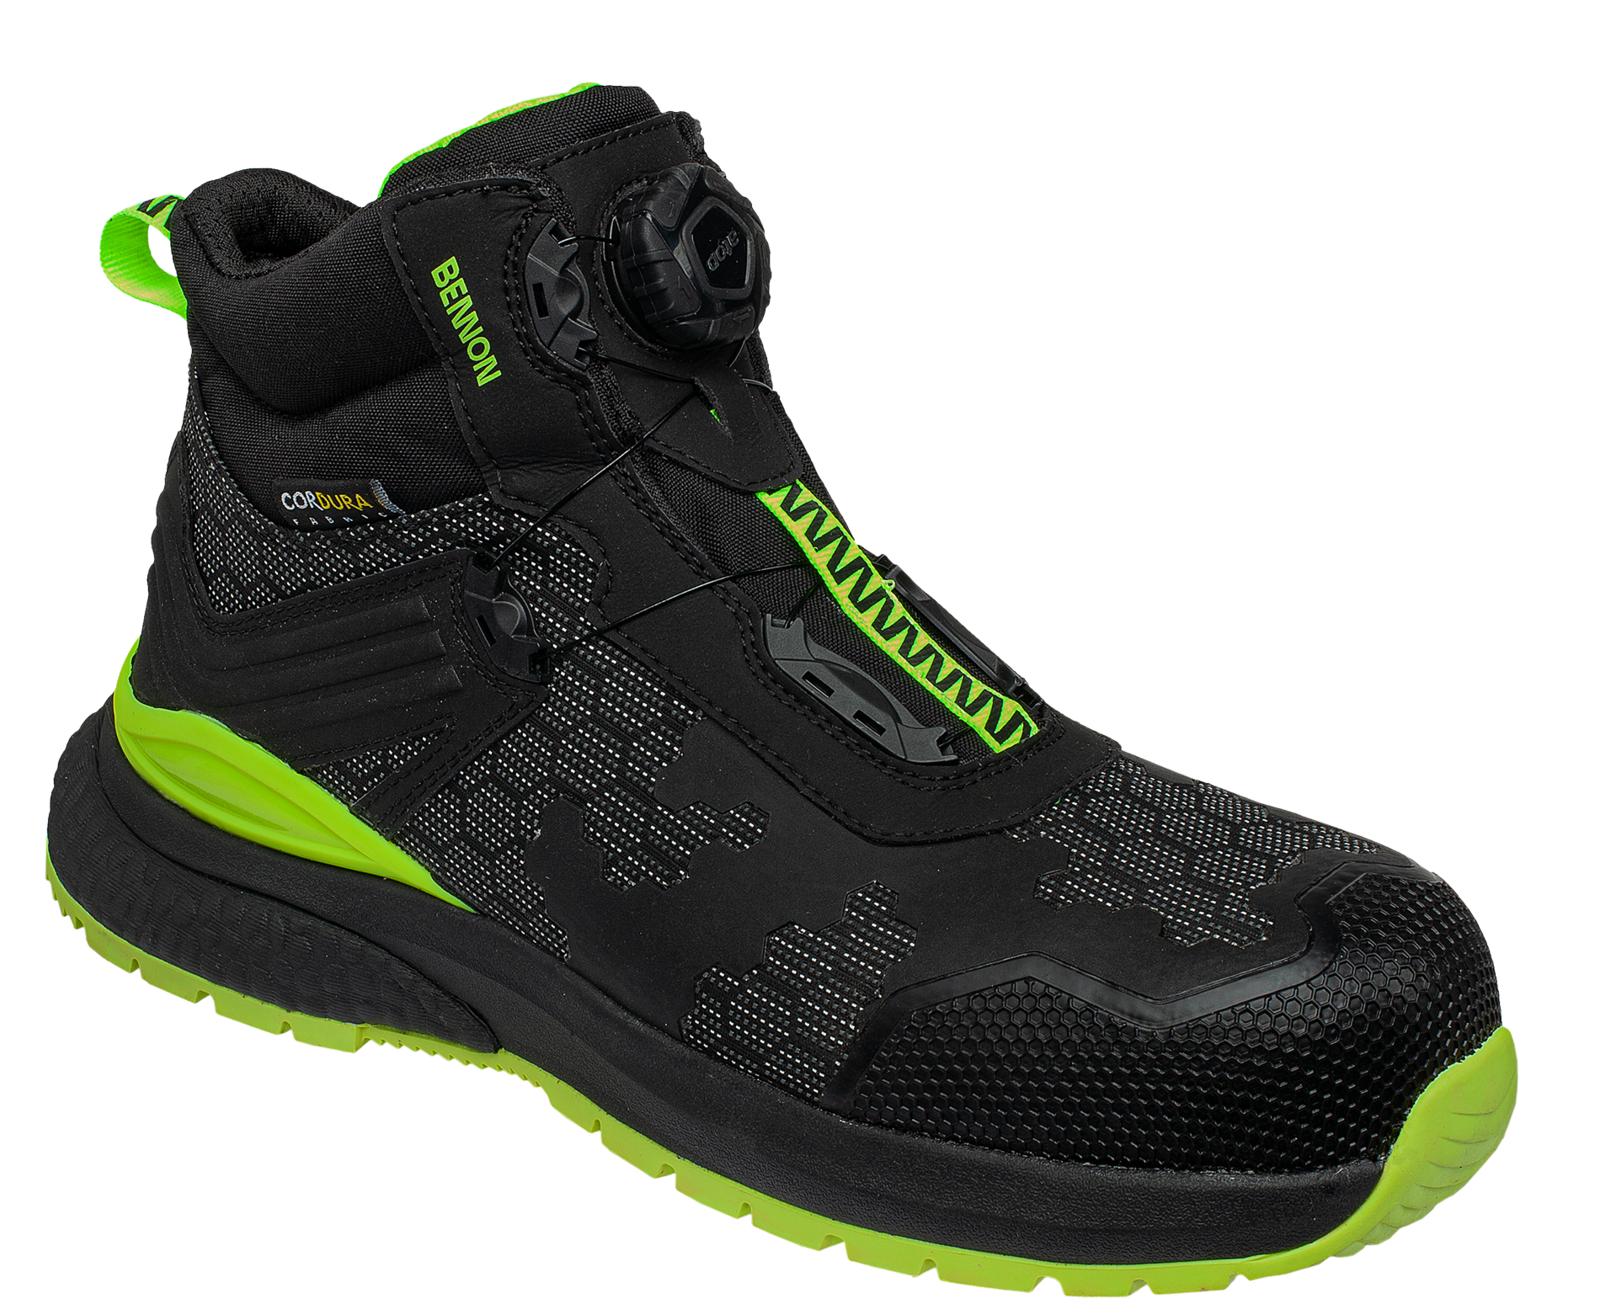 Bezpečnostná obuv Bennon Predator S3 ESD High - veľkosť: 36, farba: čierna/zelená